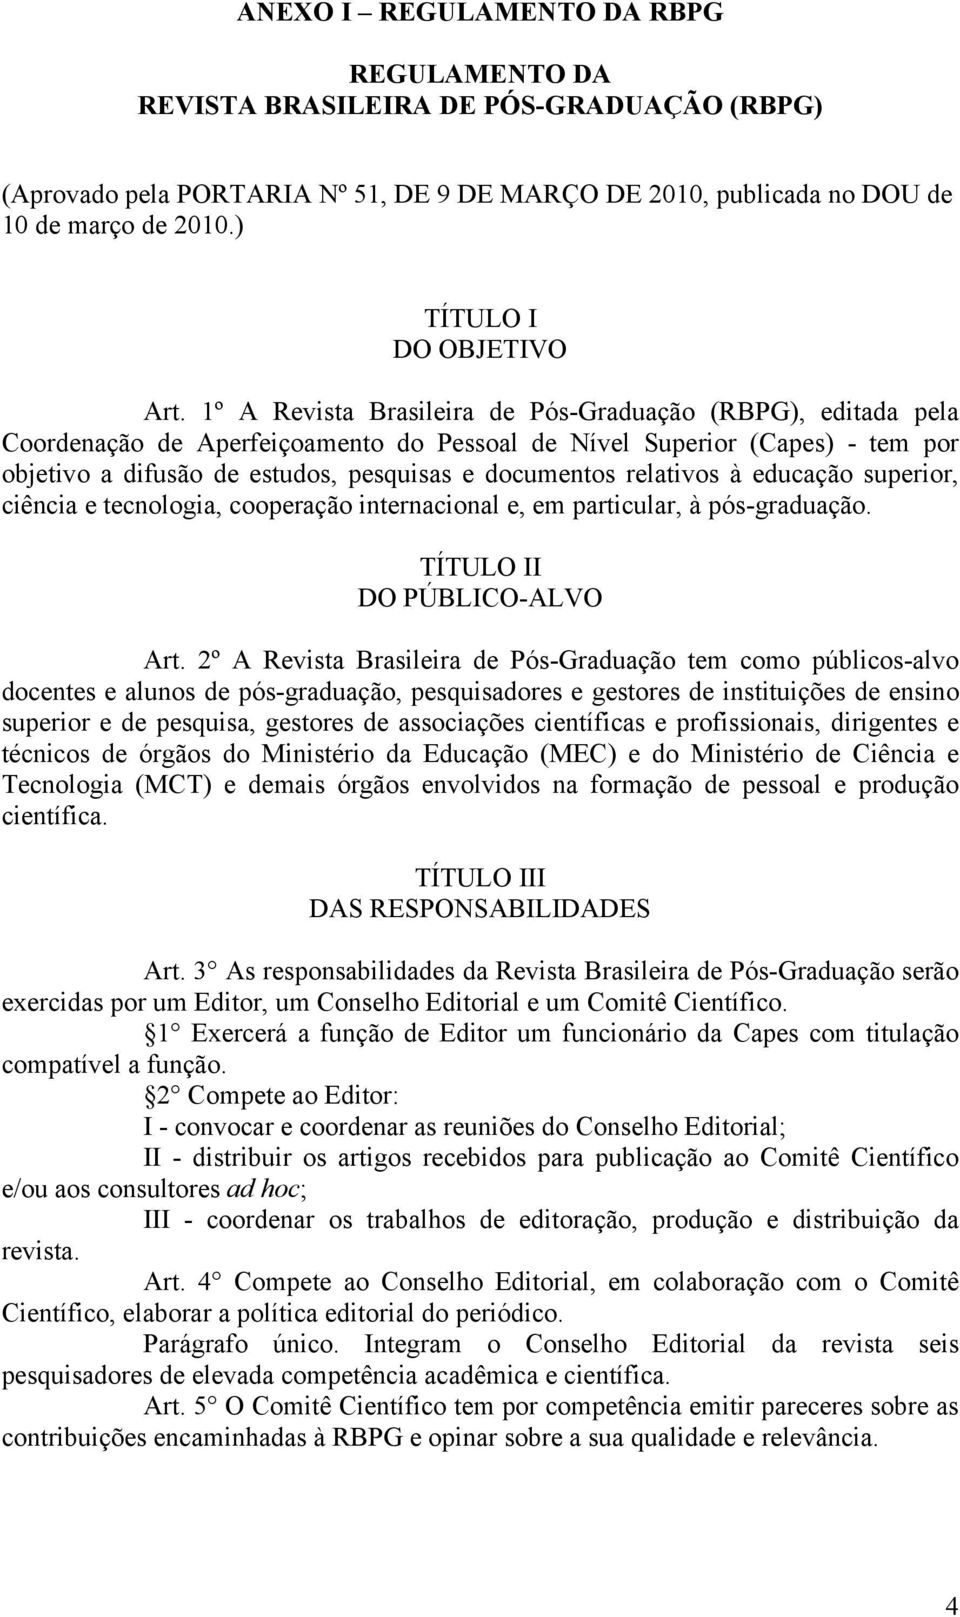 1º A Revista Brasileira de Pós-Graduação (RBPG), editada pela Coordenação de Aperfeiçoamento do Pessoal de Nível Superior (Capes) - tem por objetivo a difusão de estudos, pesquisas e documentos